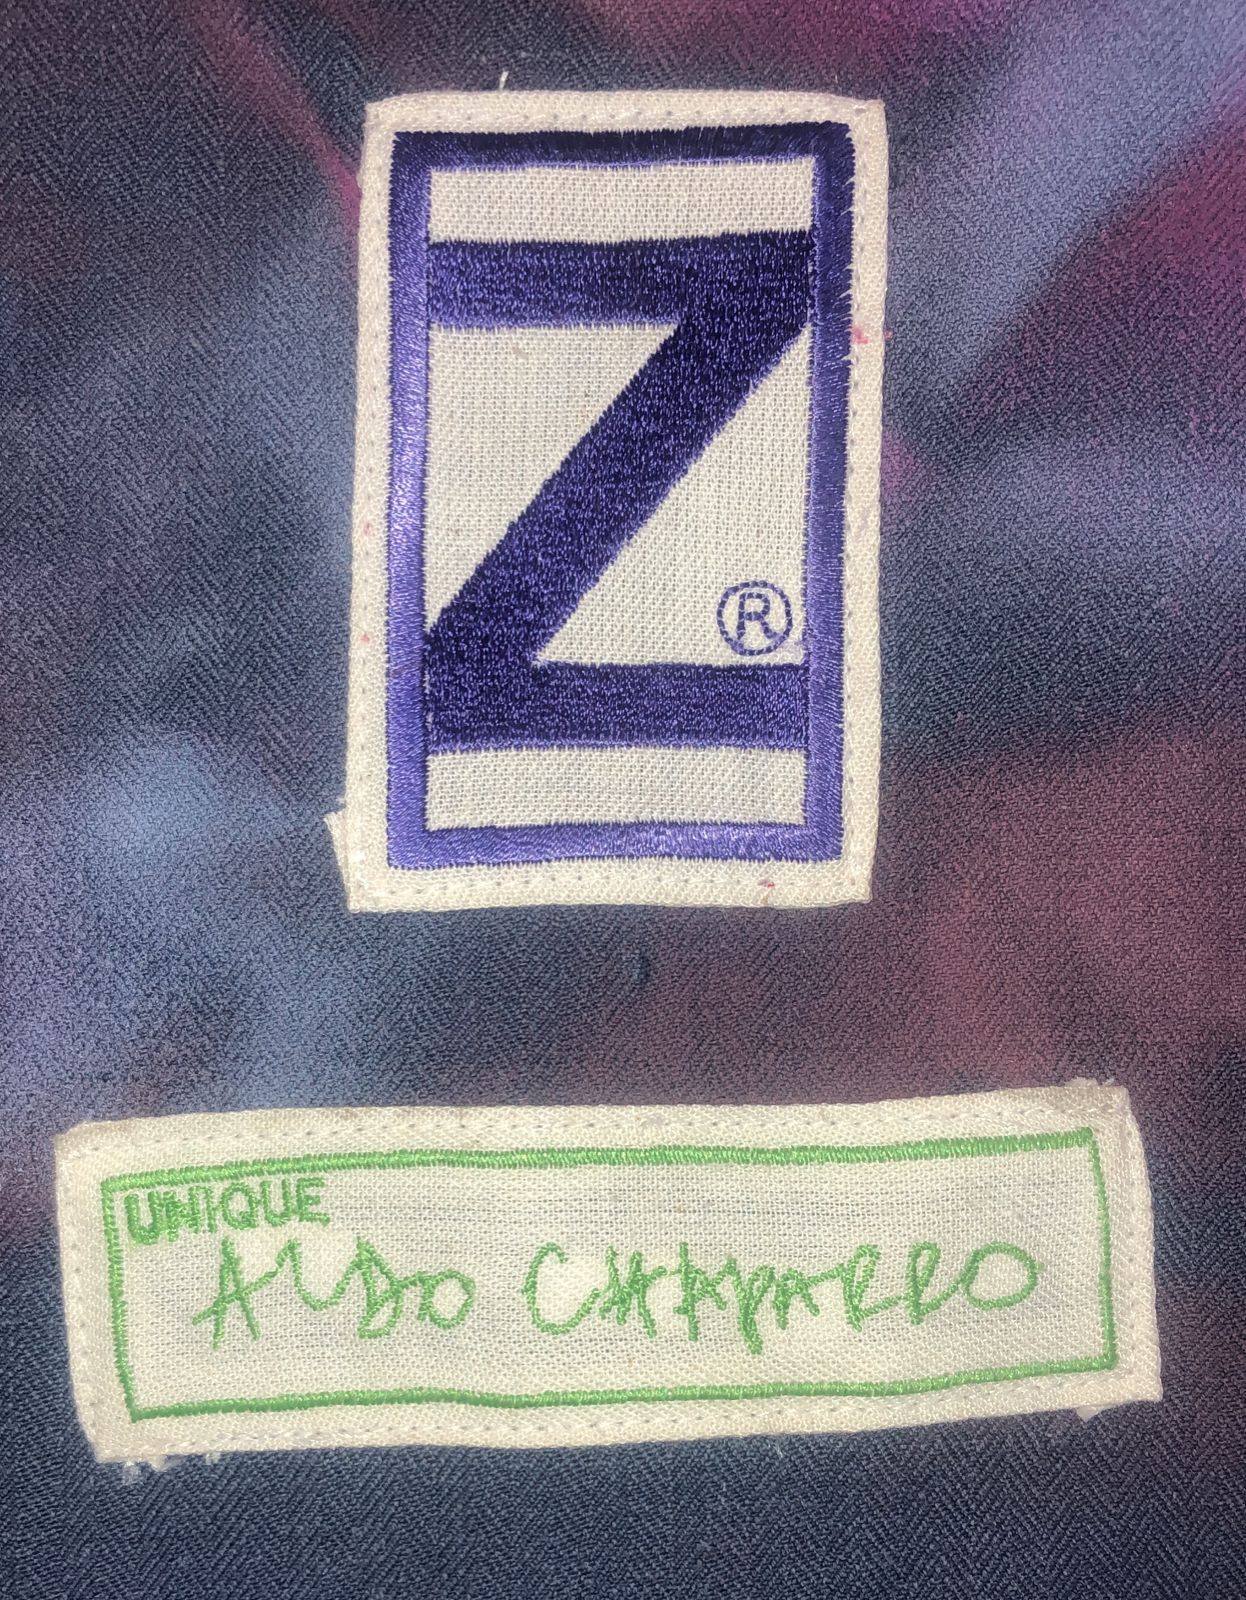 Unique Aldo Chaparro Indigo Washed Jacket